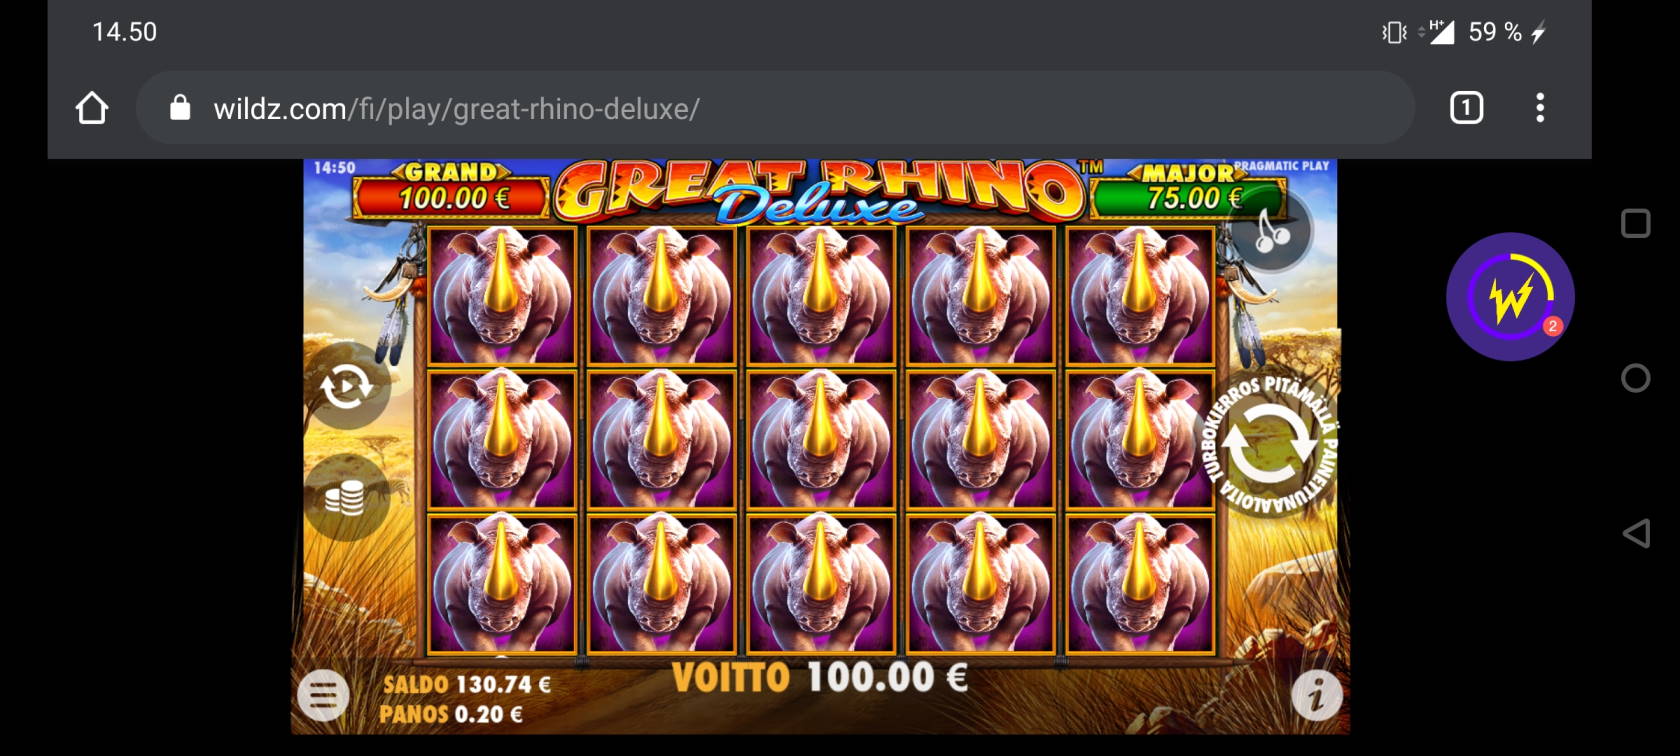 Great Rhino Deluxe Casino win picture by Temssii 4.9.2020 100e 500X Wildz